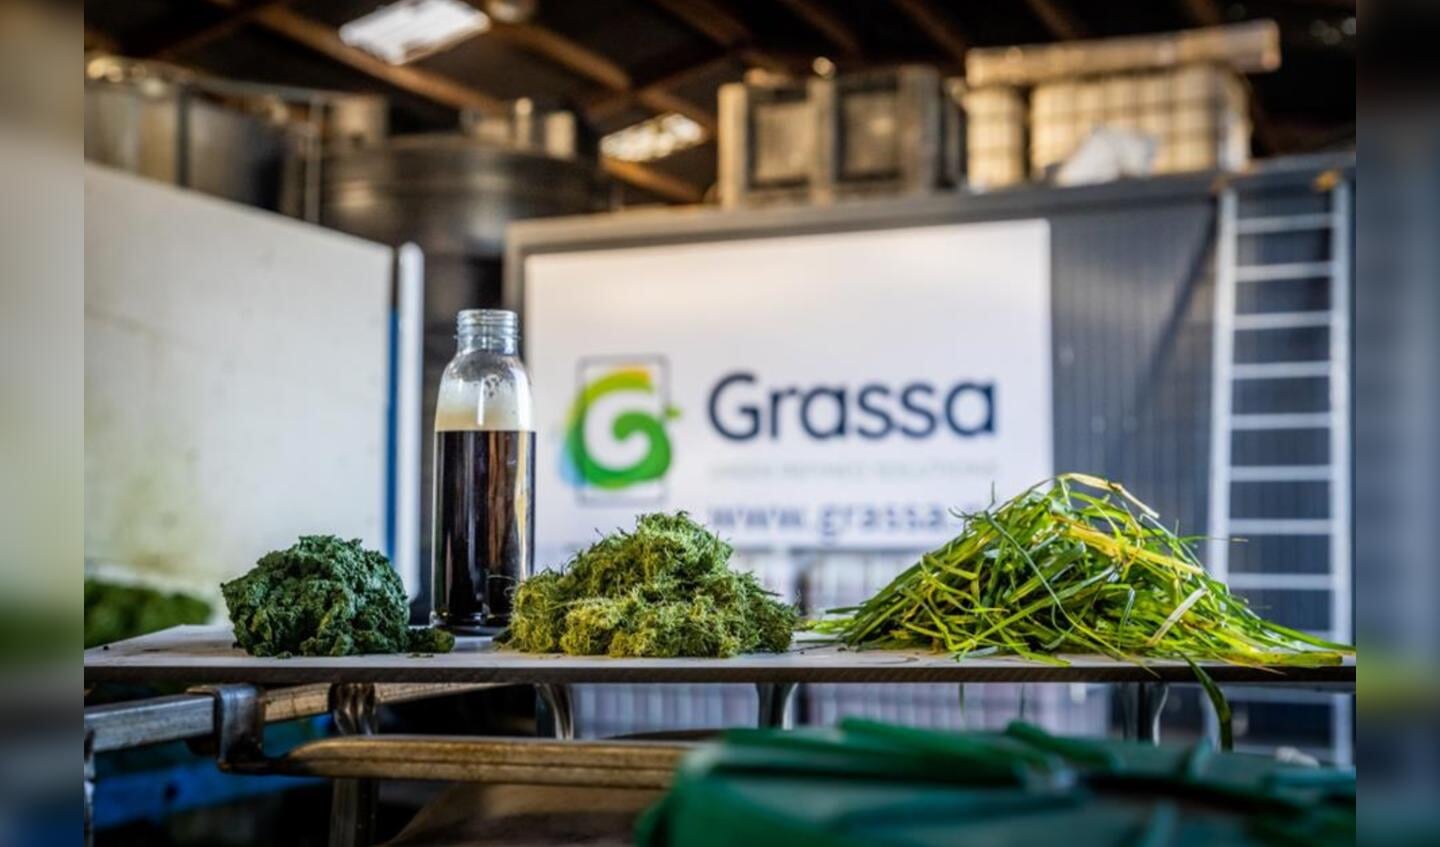 Grassa's graseiwit|De Limburgse kloostervarkens van Livar
|De producten van Grassa zijn ontsloten gras, graseiwit, prebiotisch suiker (FOS) en plantaardige meststof